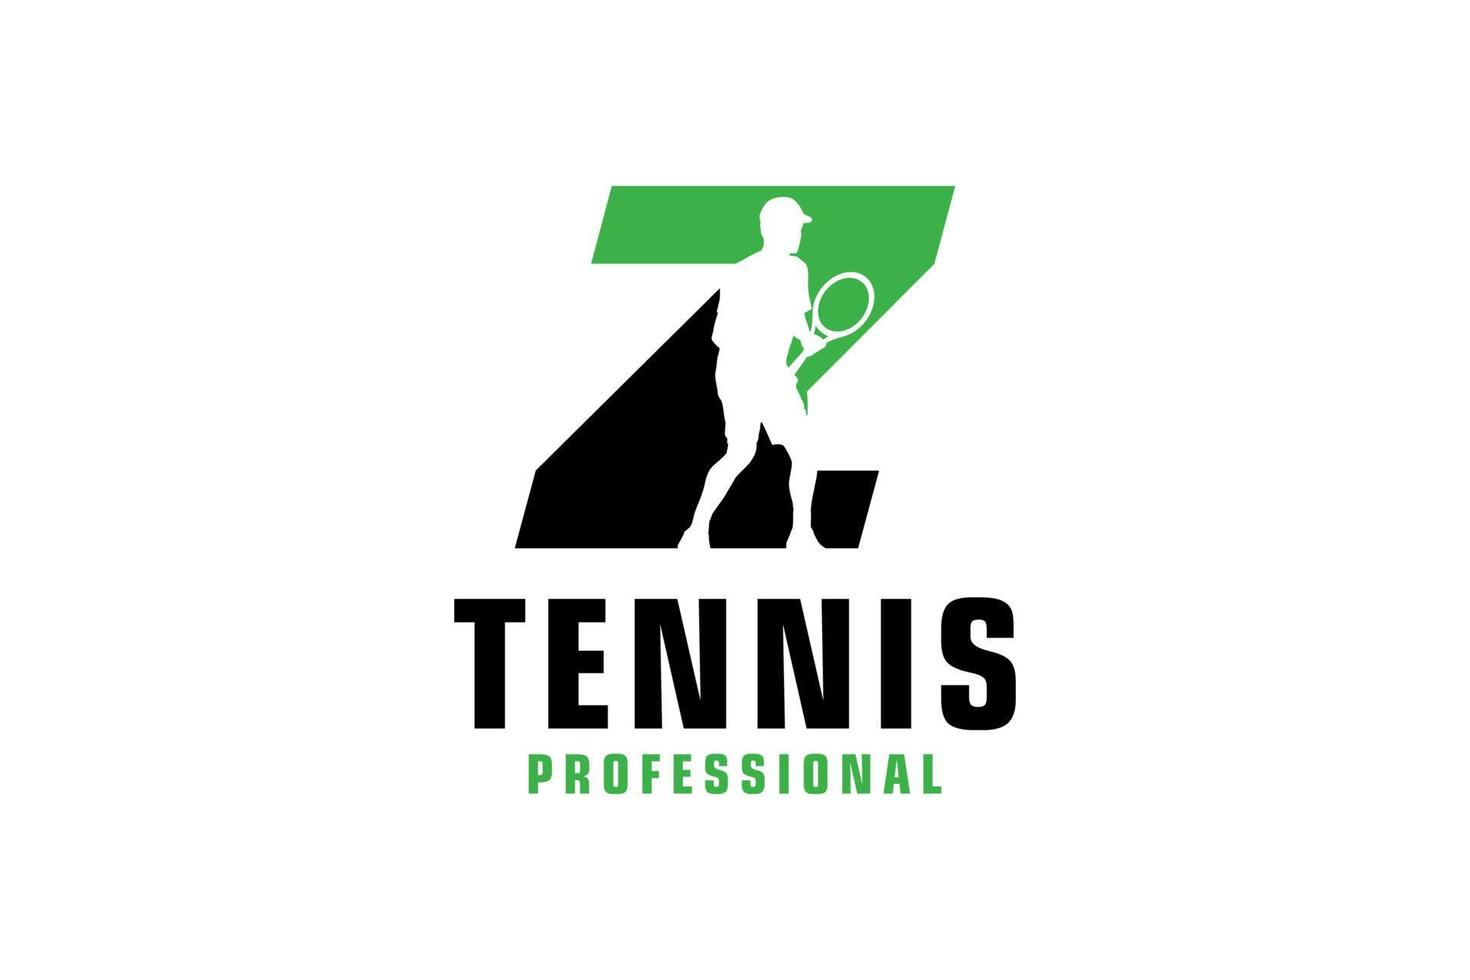 letra z con diseño de logotipo de silueta de jugador de tenis. elementos de plantilla de diseño vectorial para equipo deportivo o identidad corporativa. vector